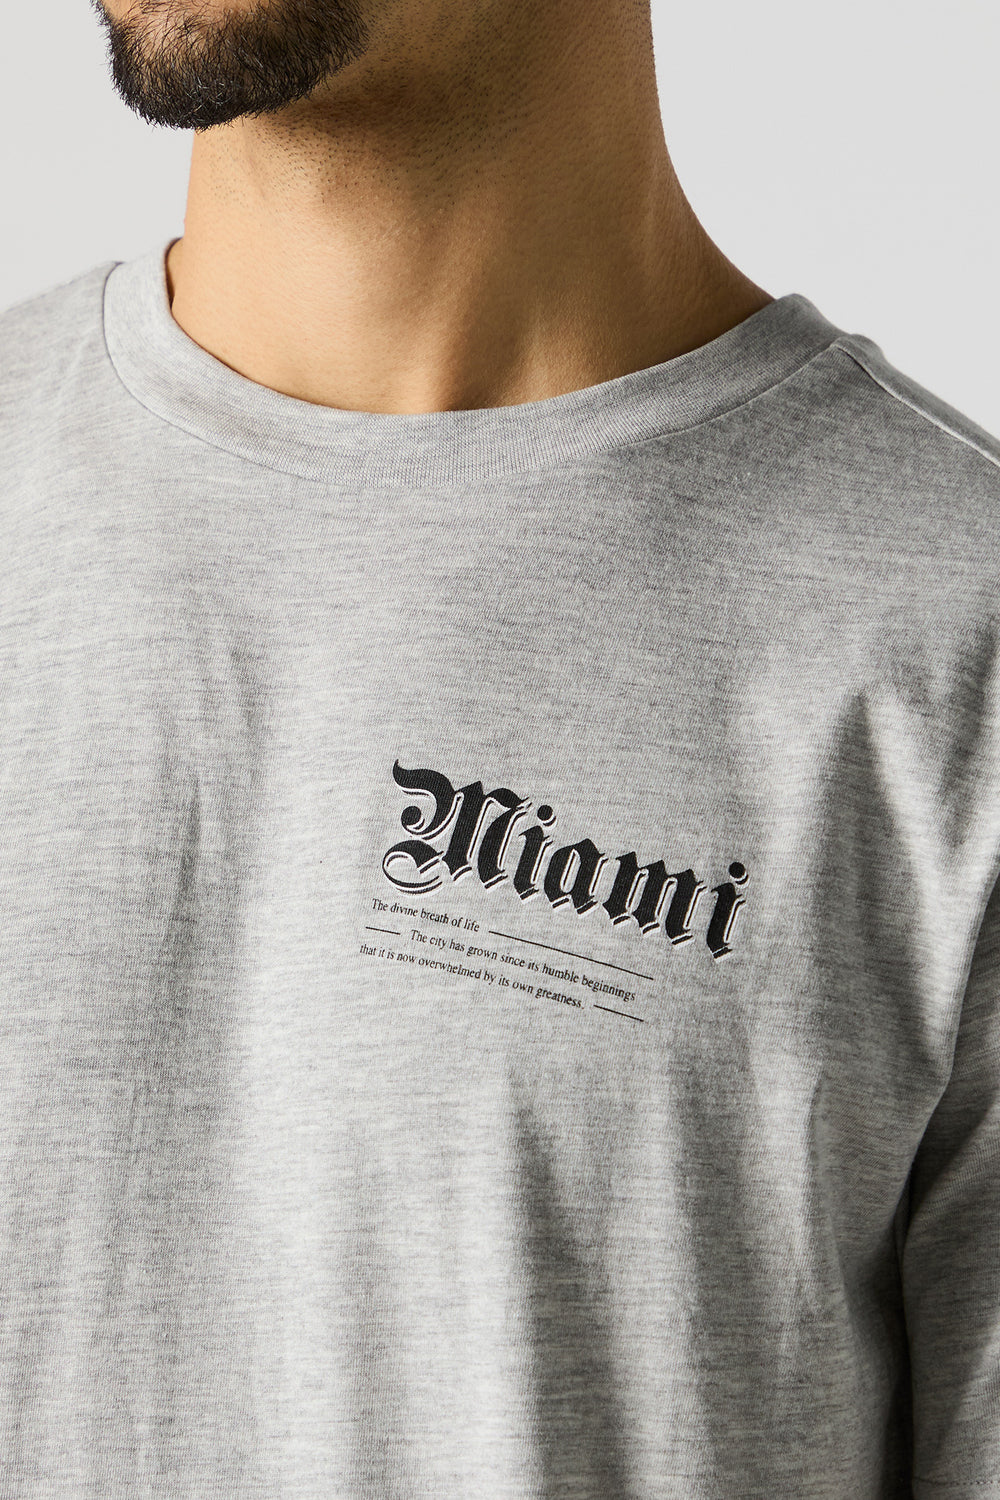 Miami Graphic T-Shirt Miami Graphic T-Shirt 1